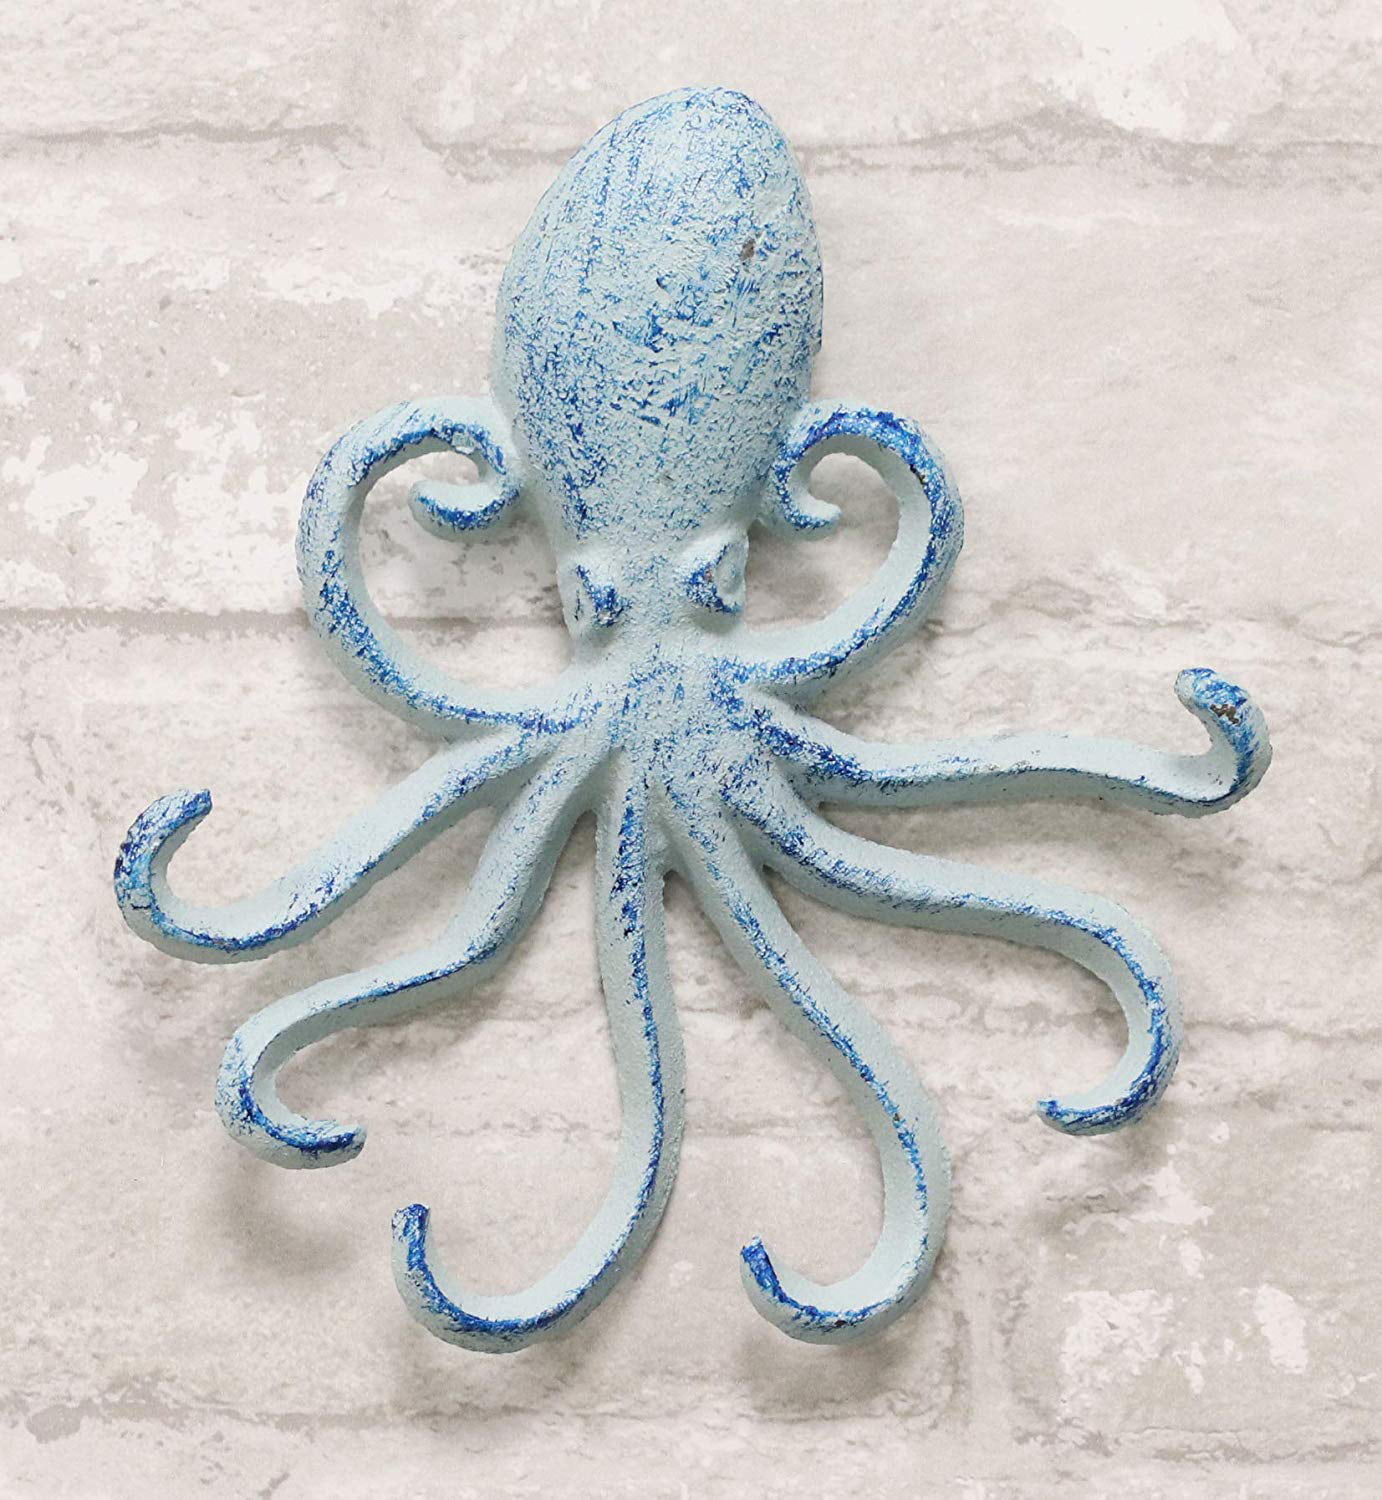 6.5"H Cast Iron Nautical Sea Octopus Teal Blue Wall Keys Hook Cthulhu Kraken 